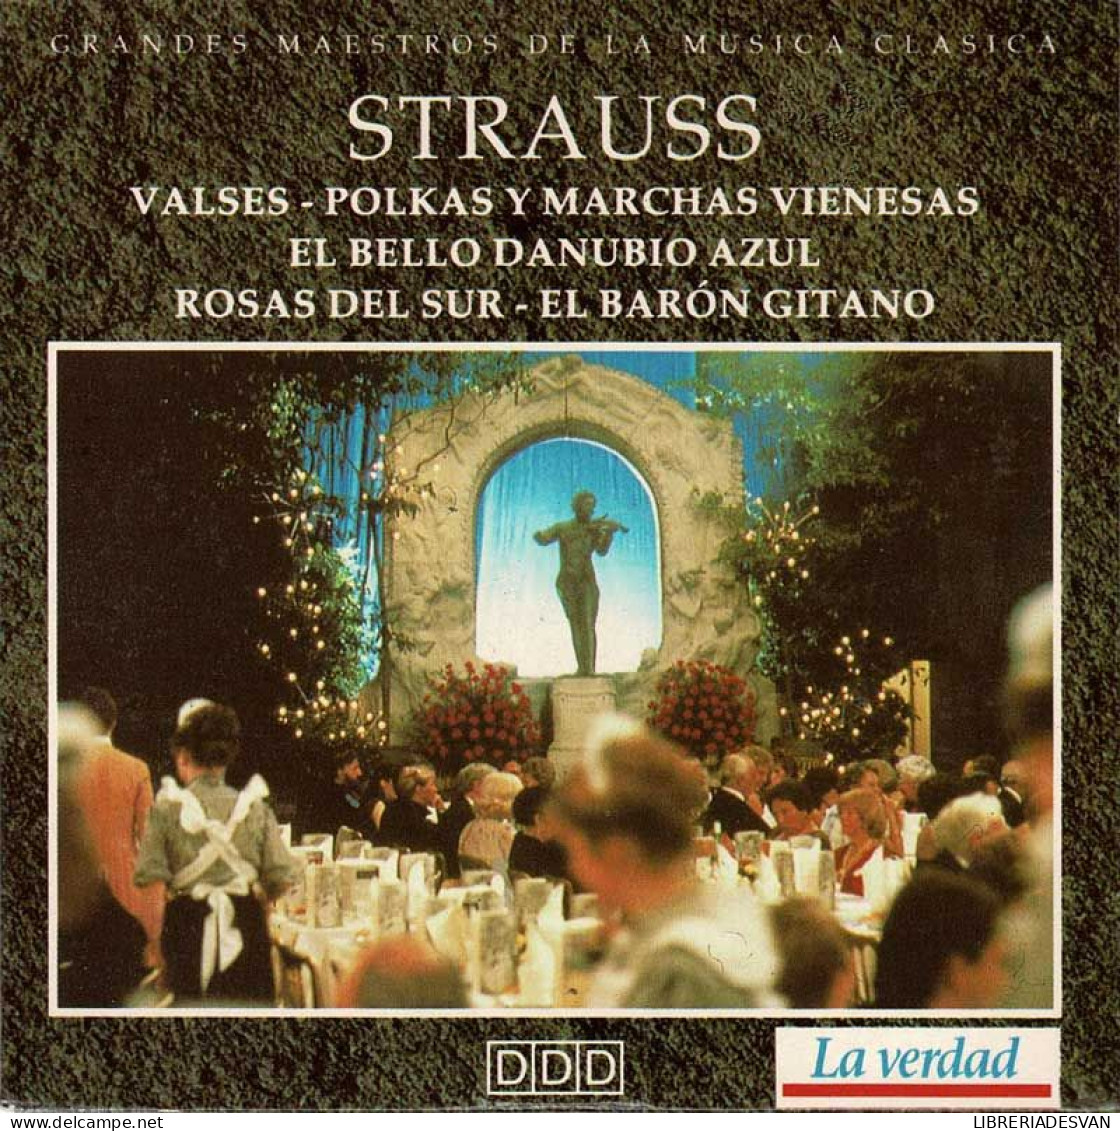 Strauss - Valses. Polkas Y Marchas Vienesas. El Bello Danubio Azul. Rosas Del Sur. El Barón Gitano. CD - Classical